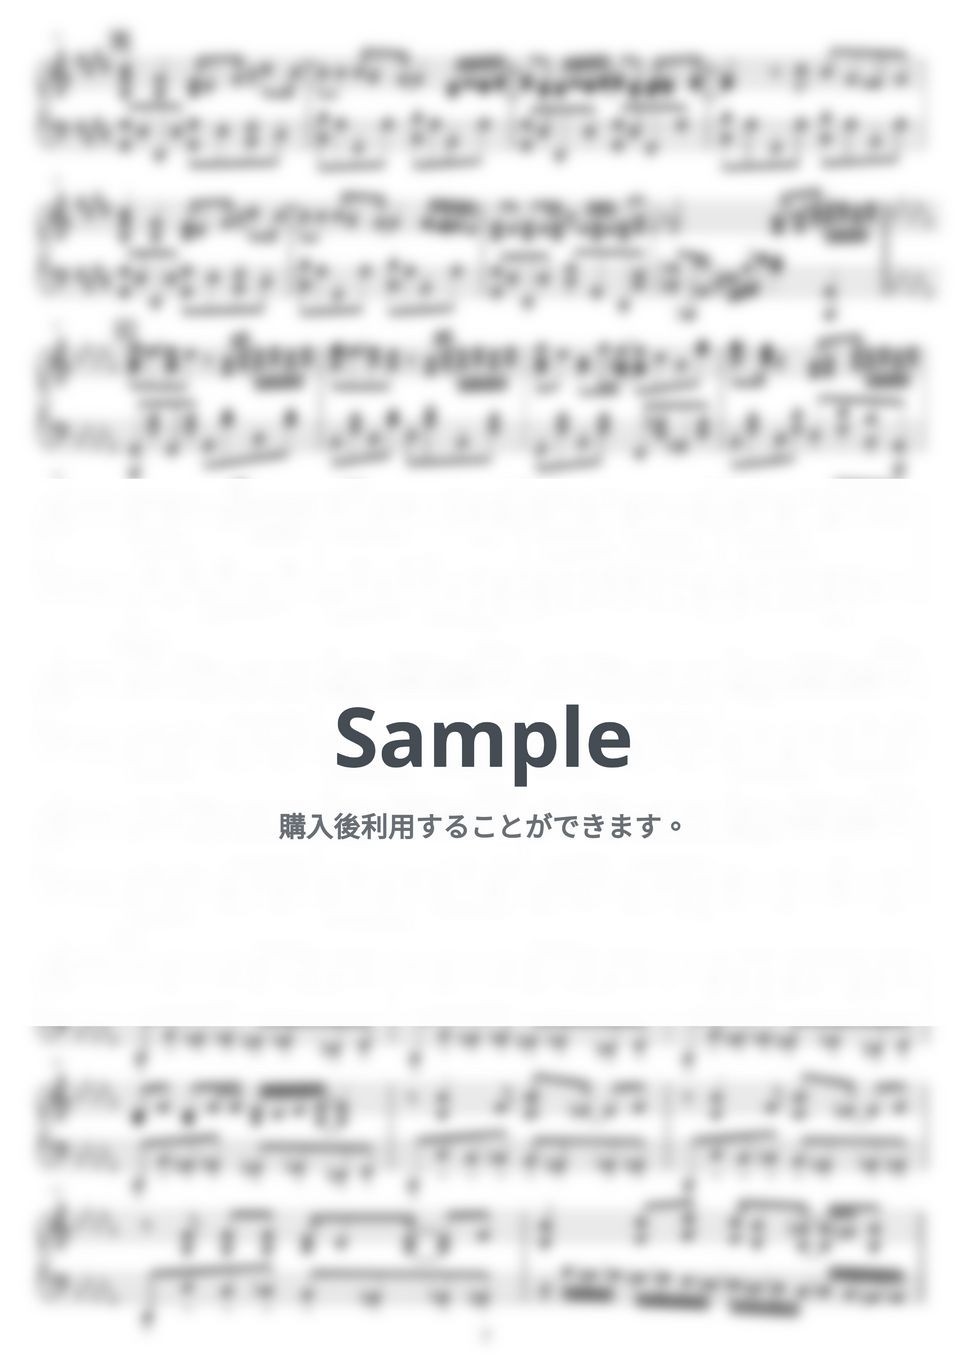 ぬゆり - ロウワー by NOTES music